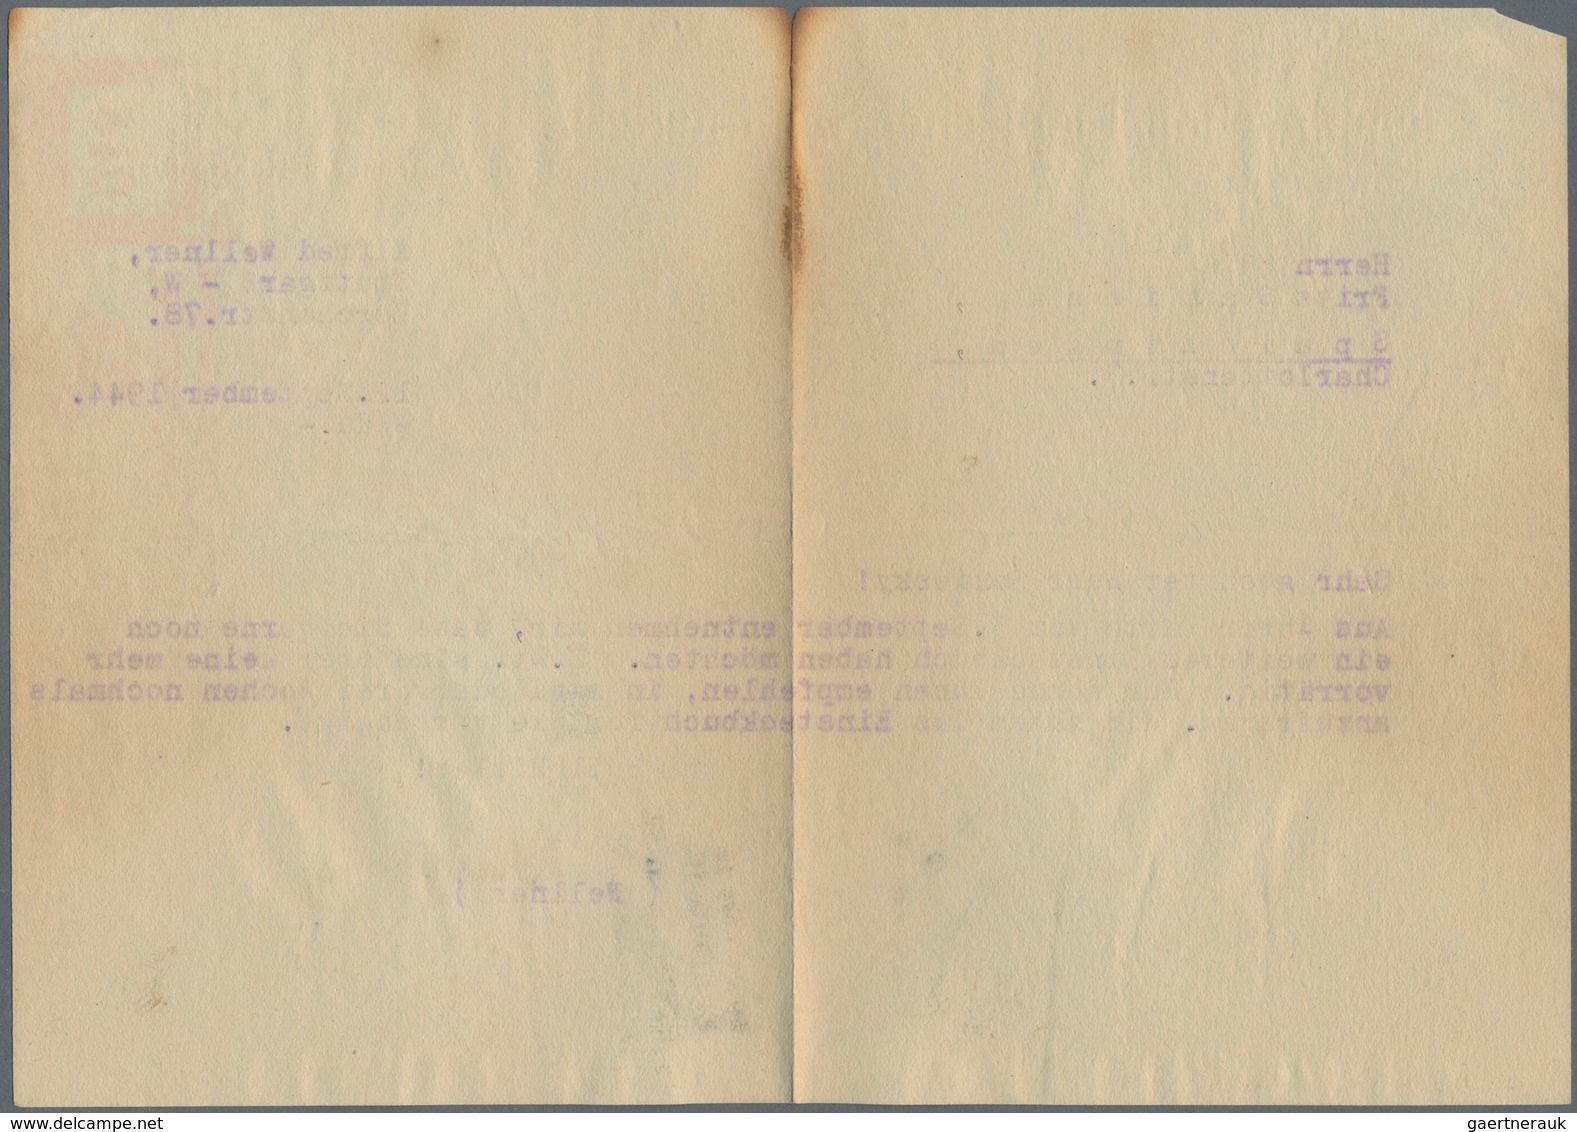 Deutsches Reich - Besonderheiten: 1944, 12 Pfg. Freistempel Auf Brief Mit Inhalt! Der Brief Ist Mit - Other & Unclassified